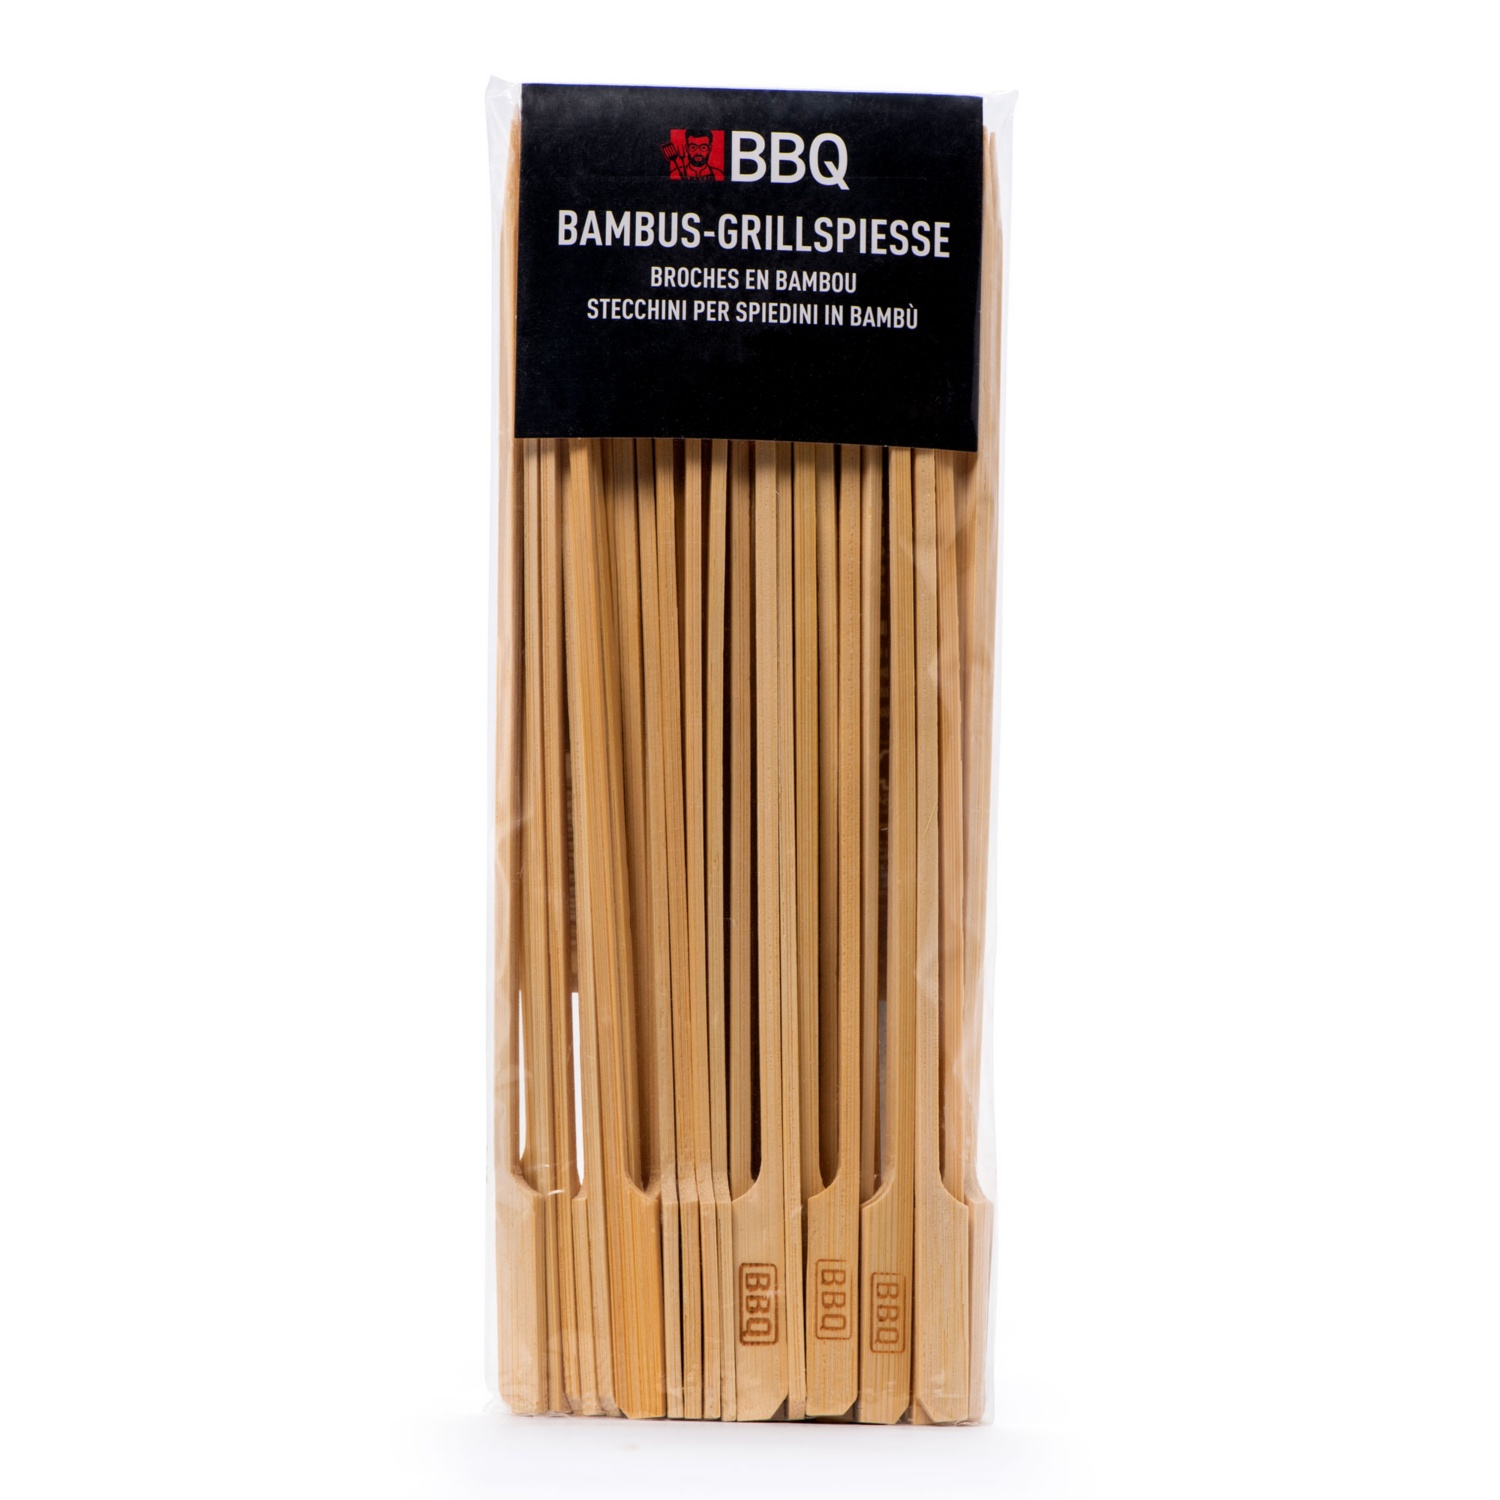 Brochettes en bambou BBQ